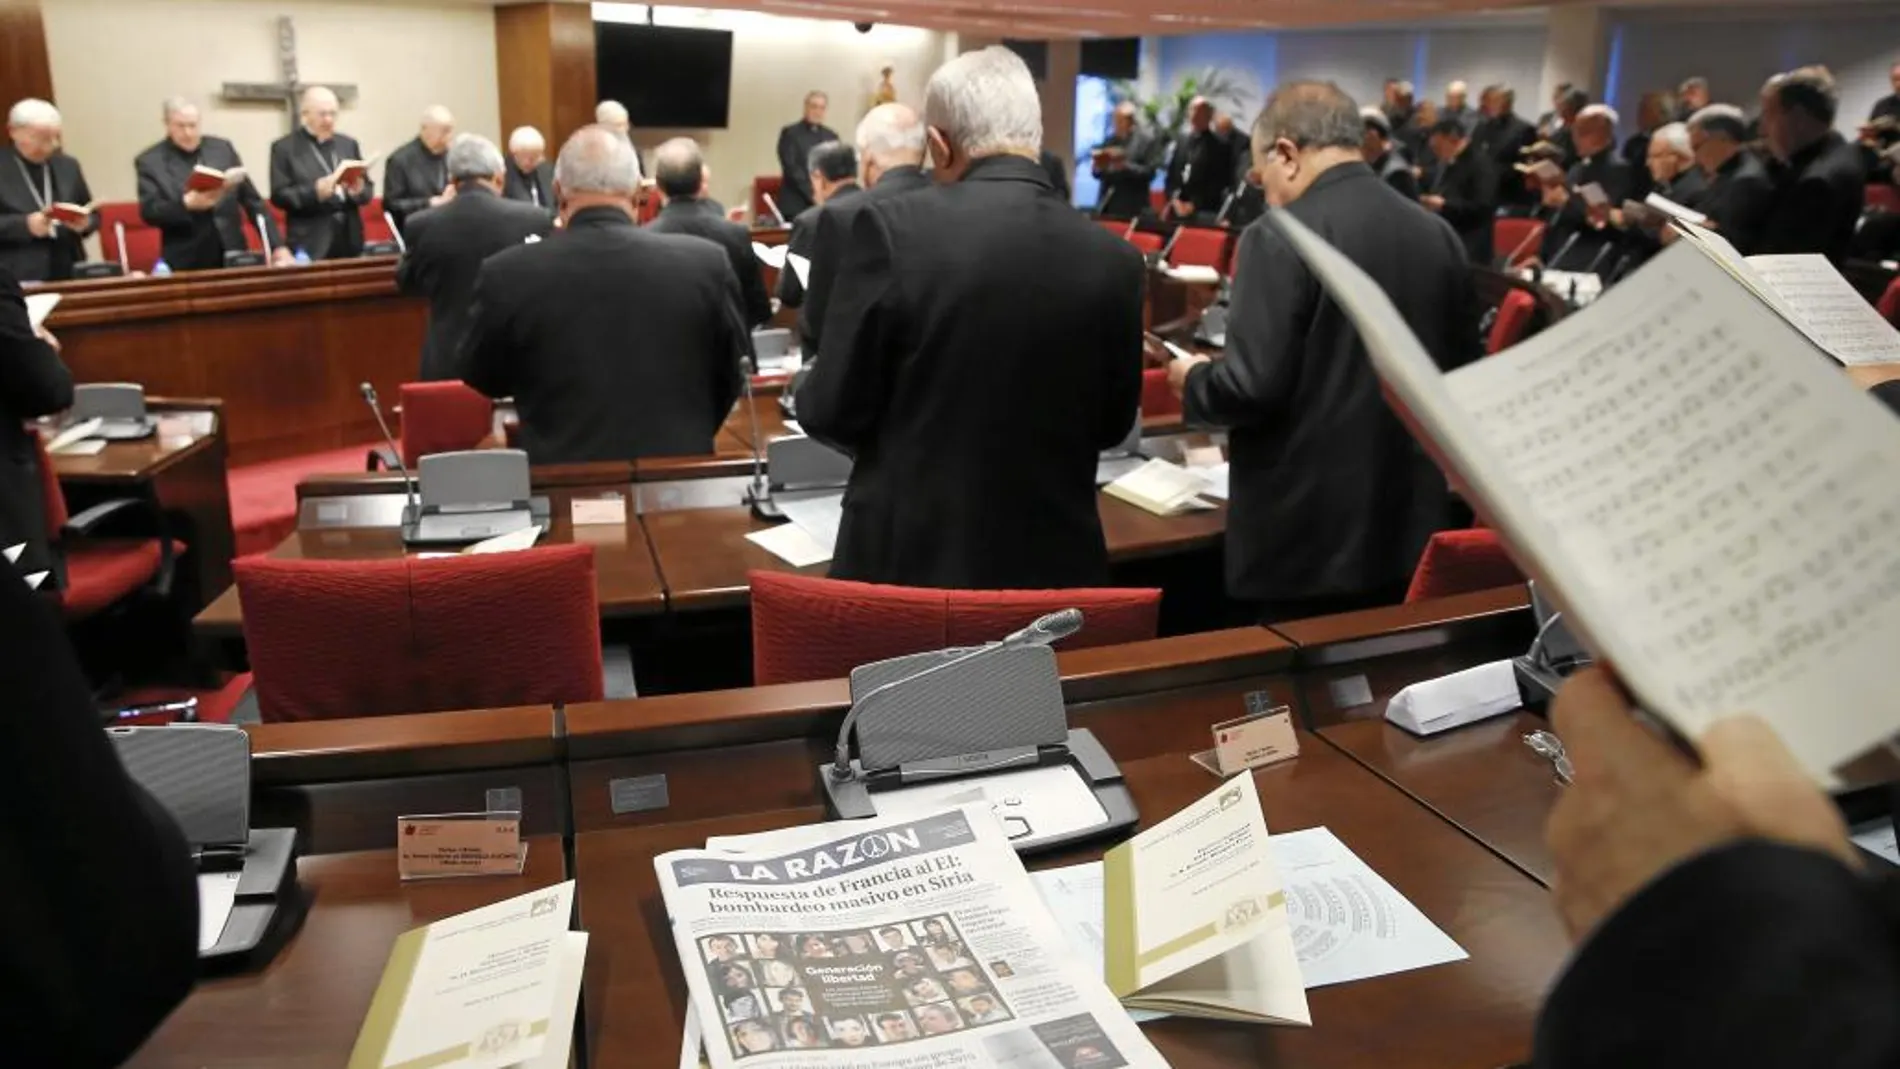 Los obispos españoles rezan ayer la Hora Intermedia antes de empezar su Asamblea Plenaria